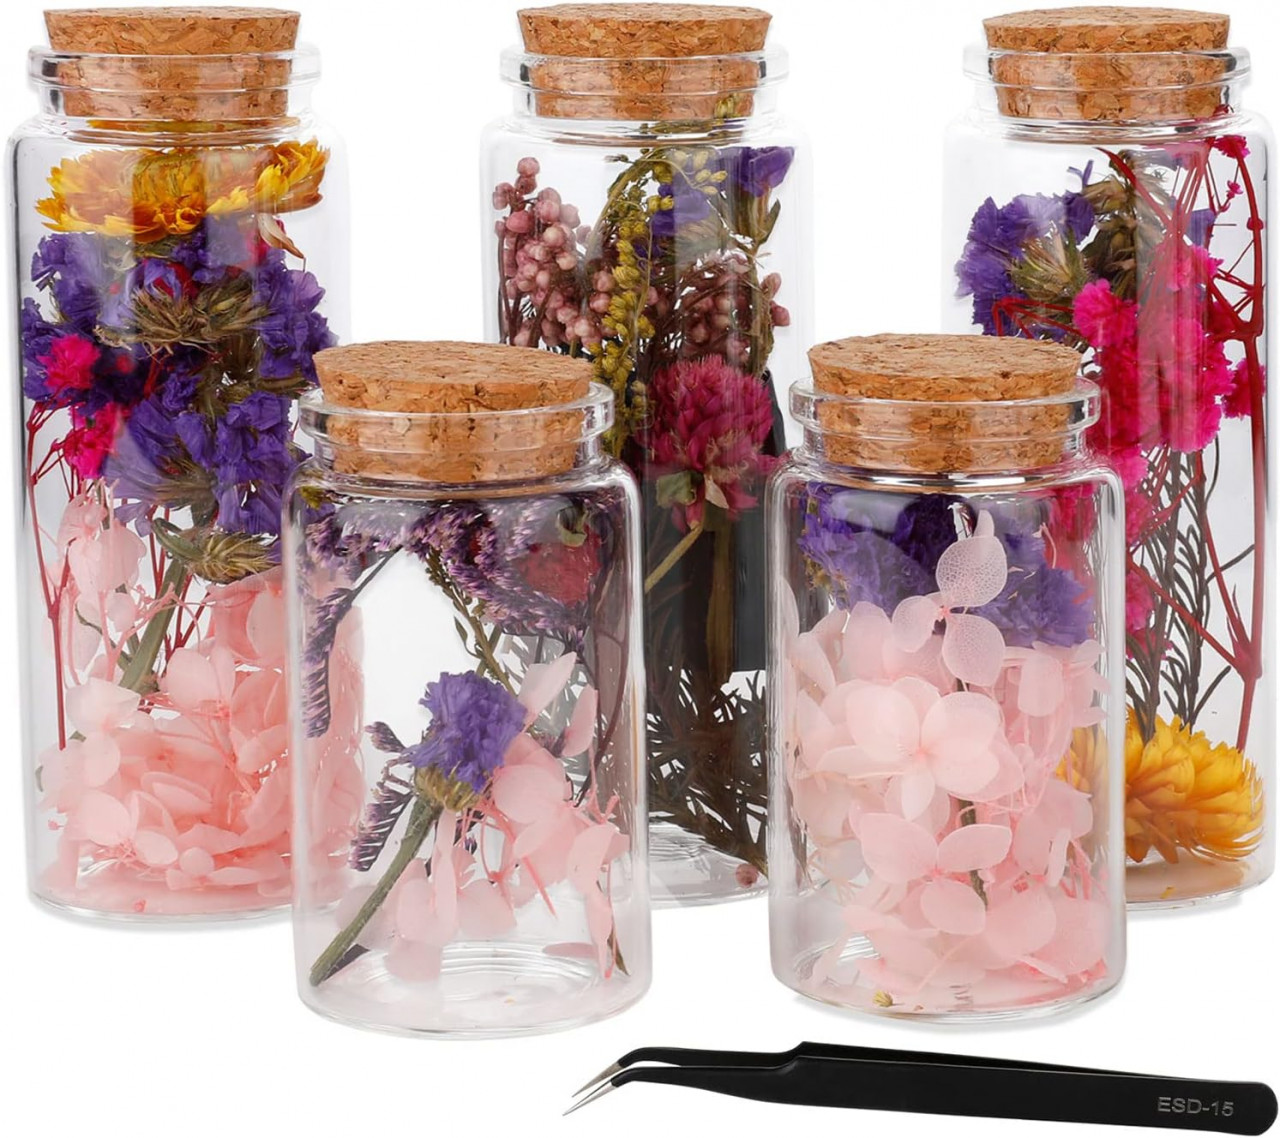 Set de 5 recipiente cu flori pentru mestesuguri Lyeiaa, sticla/flori uscate, multicolor, 12 x 4,7 cm / 8 x 4,7 cm Pret Redus chilipirul-zilei pret redus imagine 2022